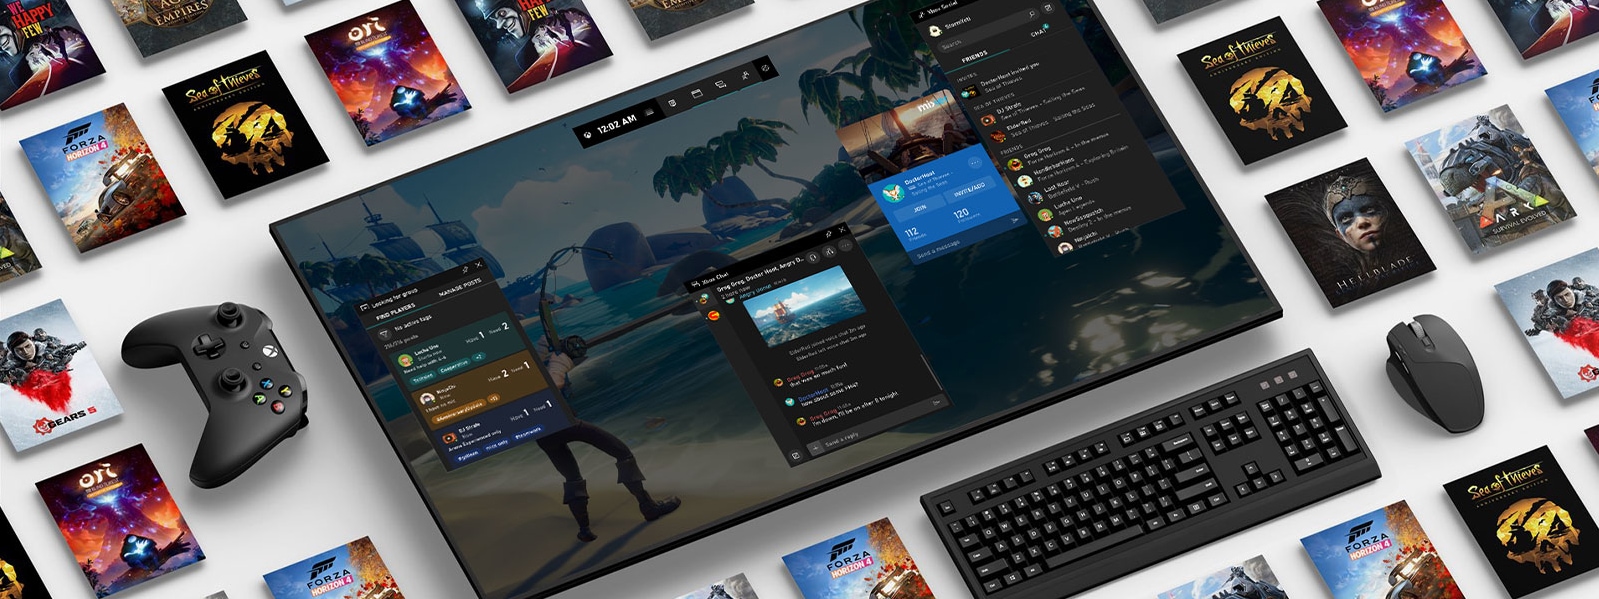 Klavye, fare ve oyun kumandası ile dijital ekranda görünen bazı Windows 10 ve Xbox oyun adları 